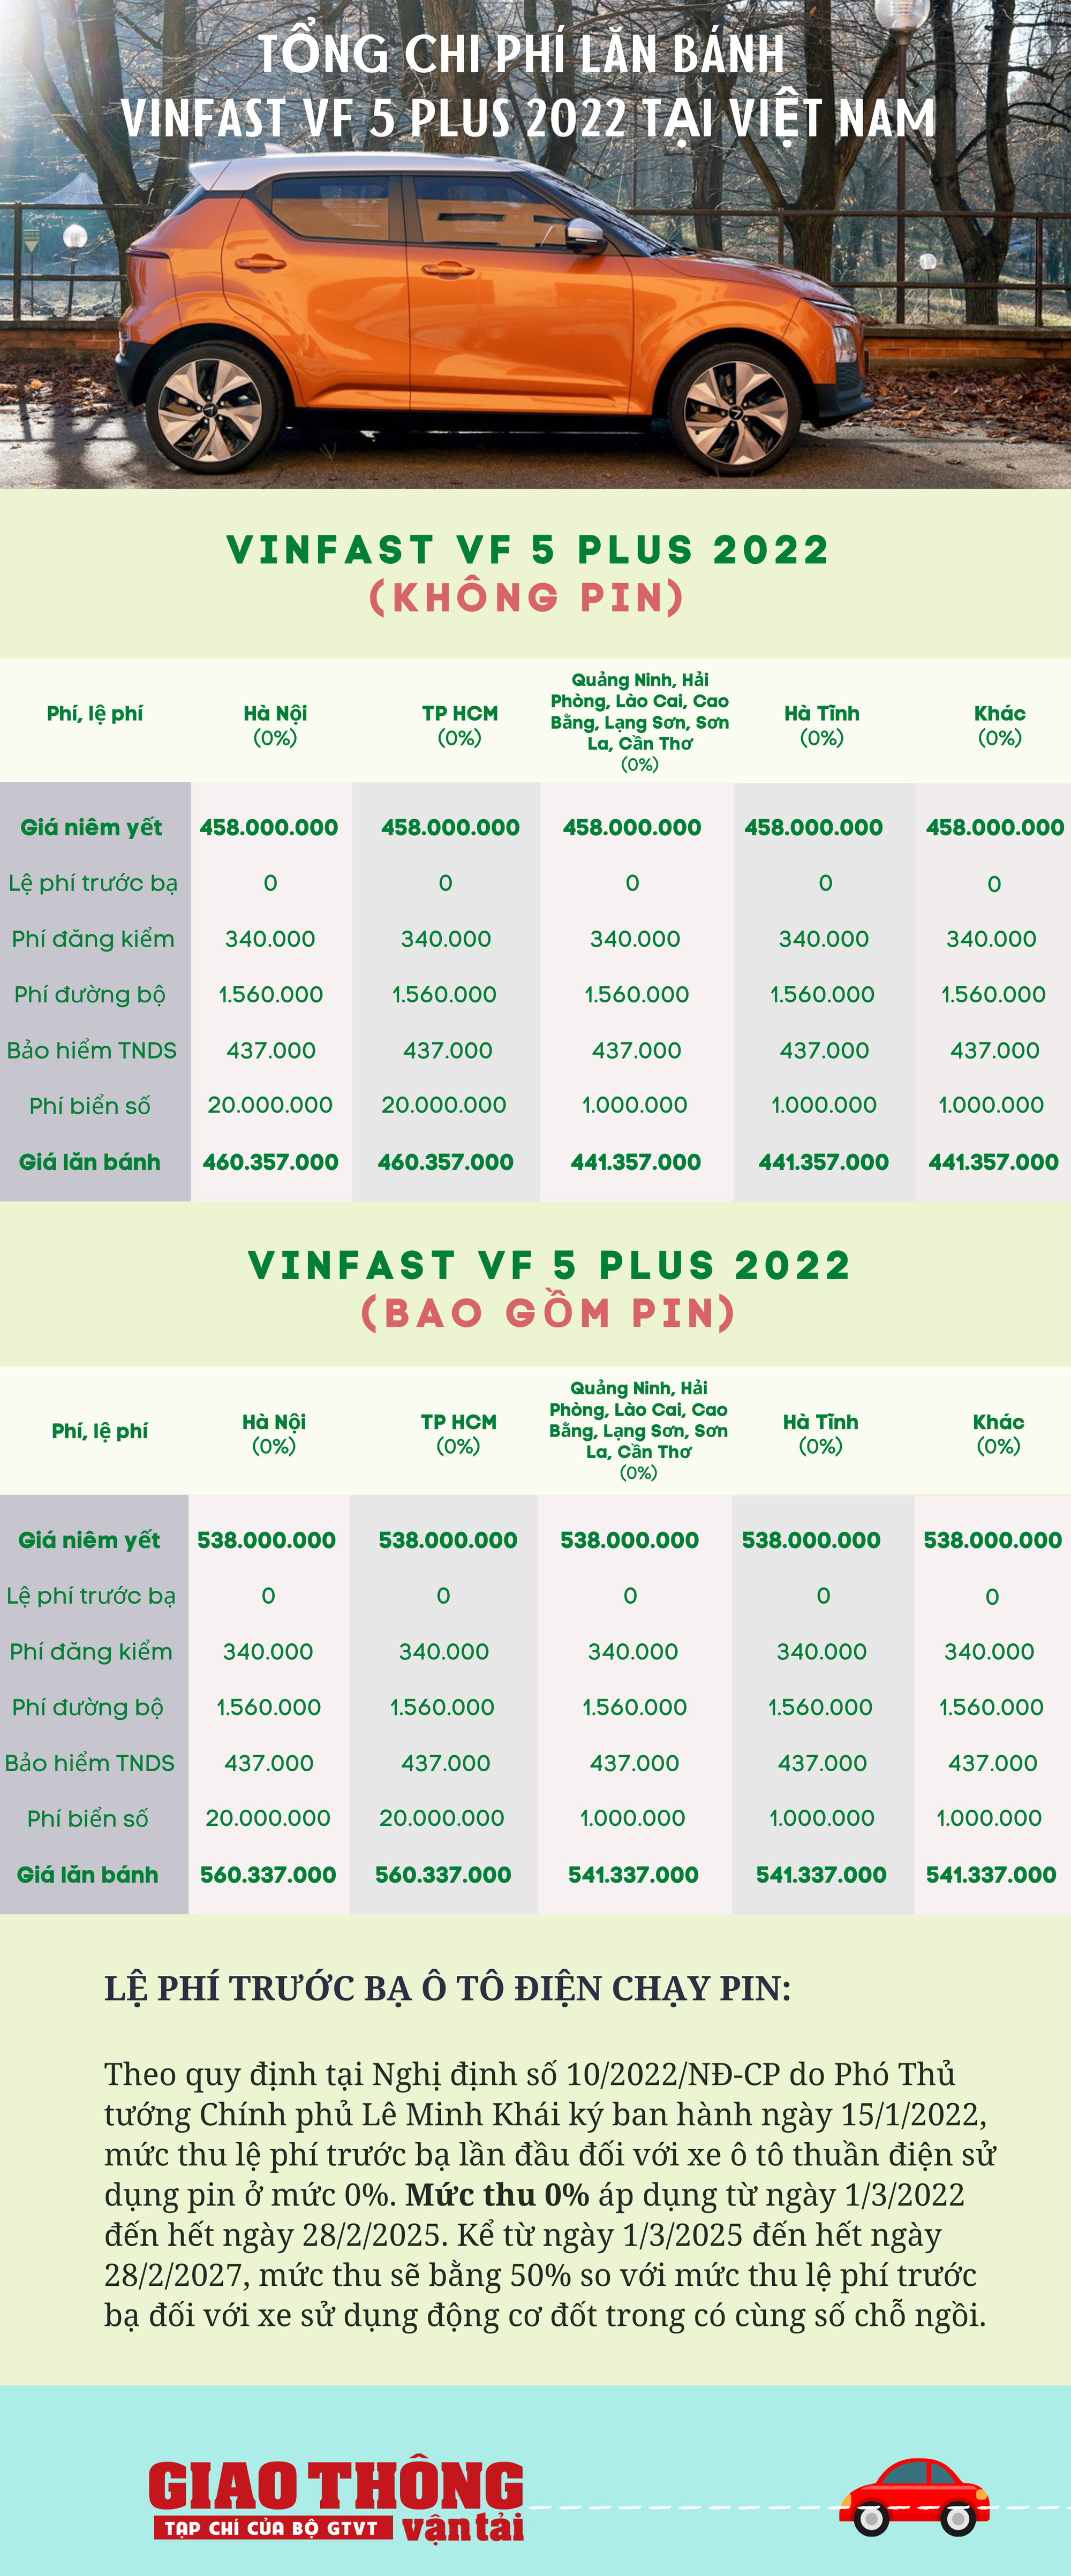 VinFast VF 5 Plus 2022